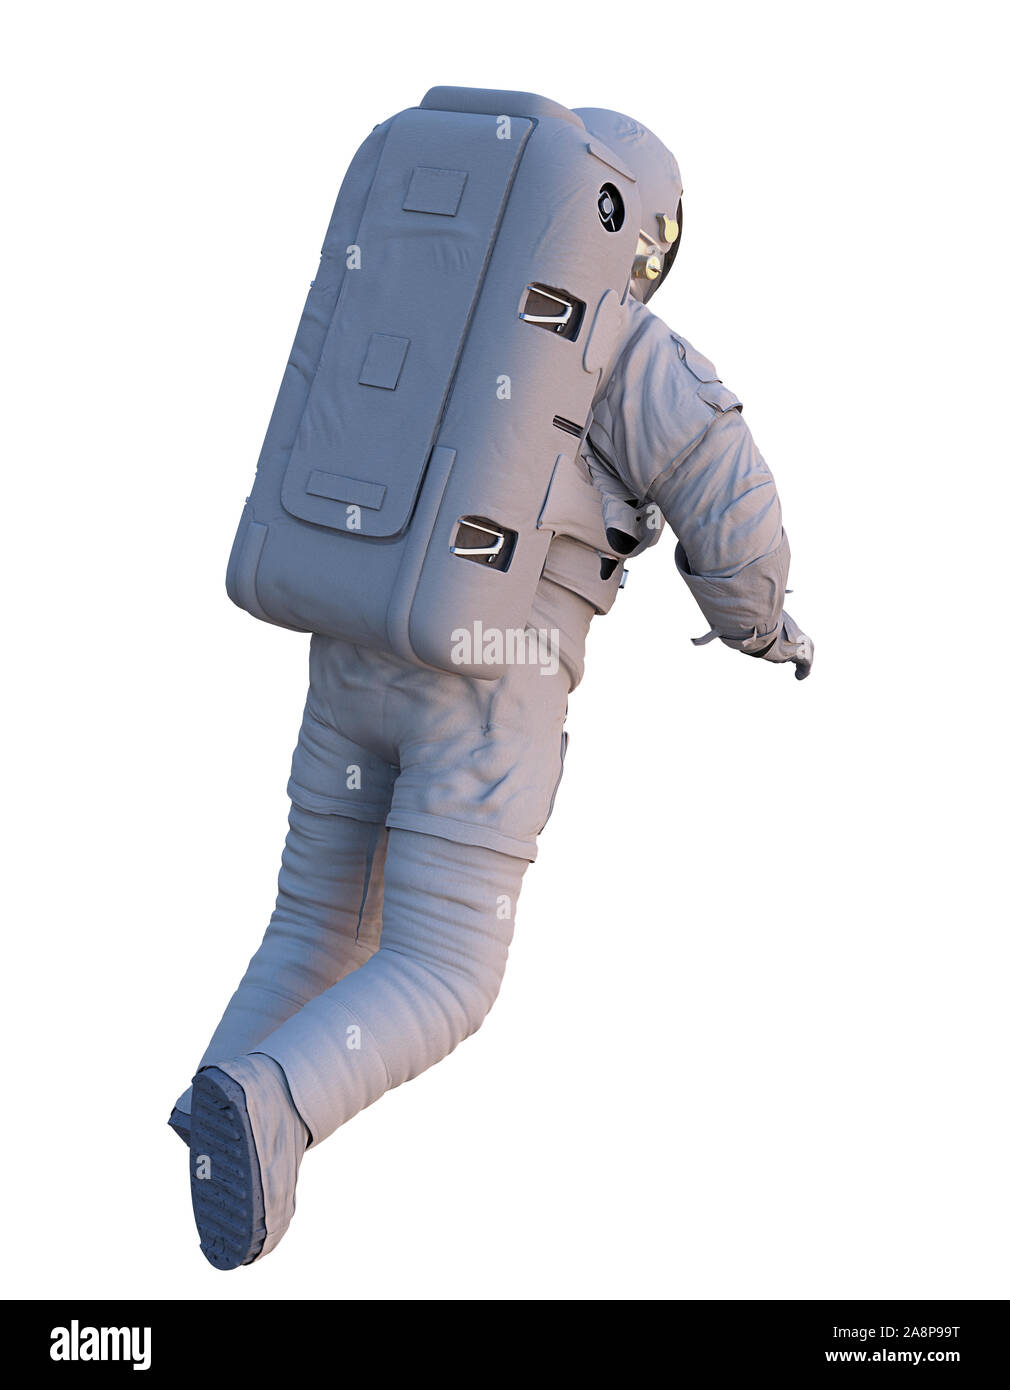 L'astronaute de vol, vue de dos, isolé sur fond blanc Banque D'Images